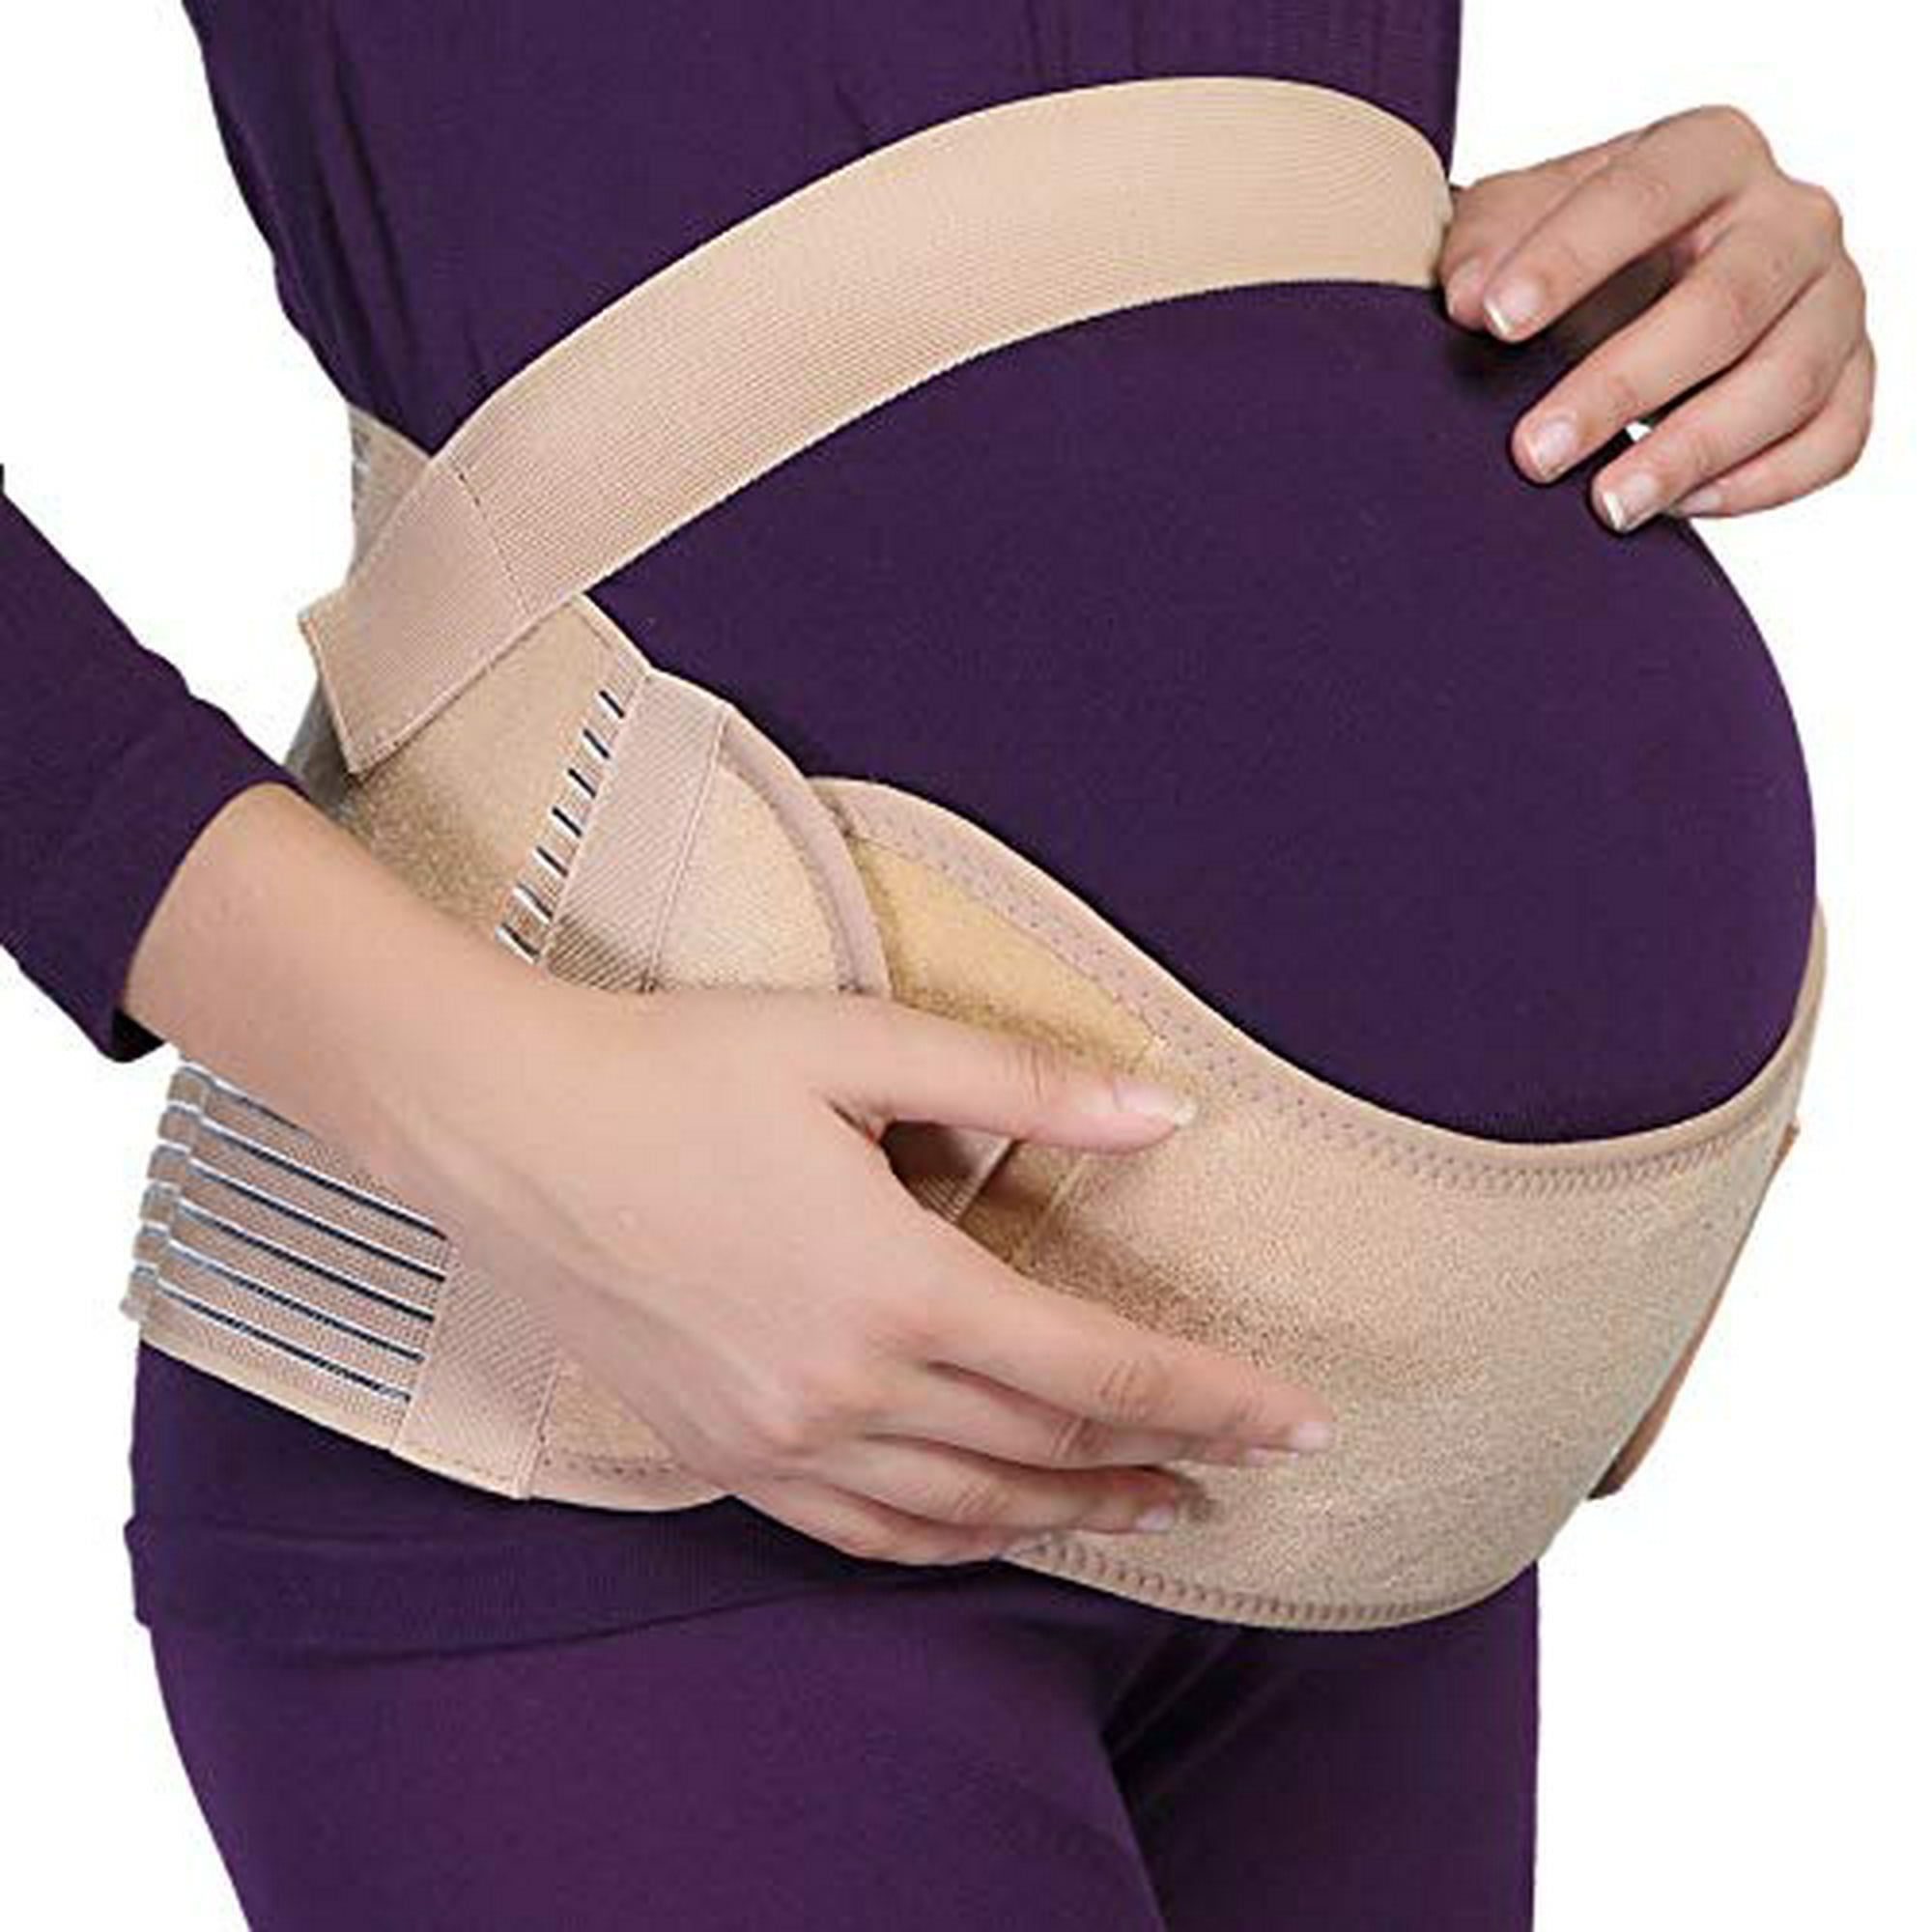 Cinturón de maternidad, banda para la cintura/espalda/abdomen, faja para el  vientre, negro, talla S-XXL Zhivalor Fajas de Maternidad